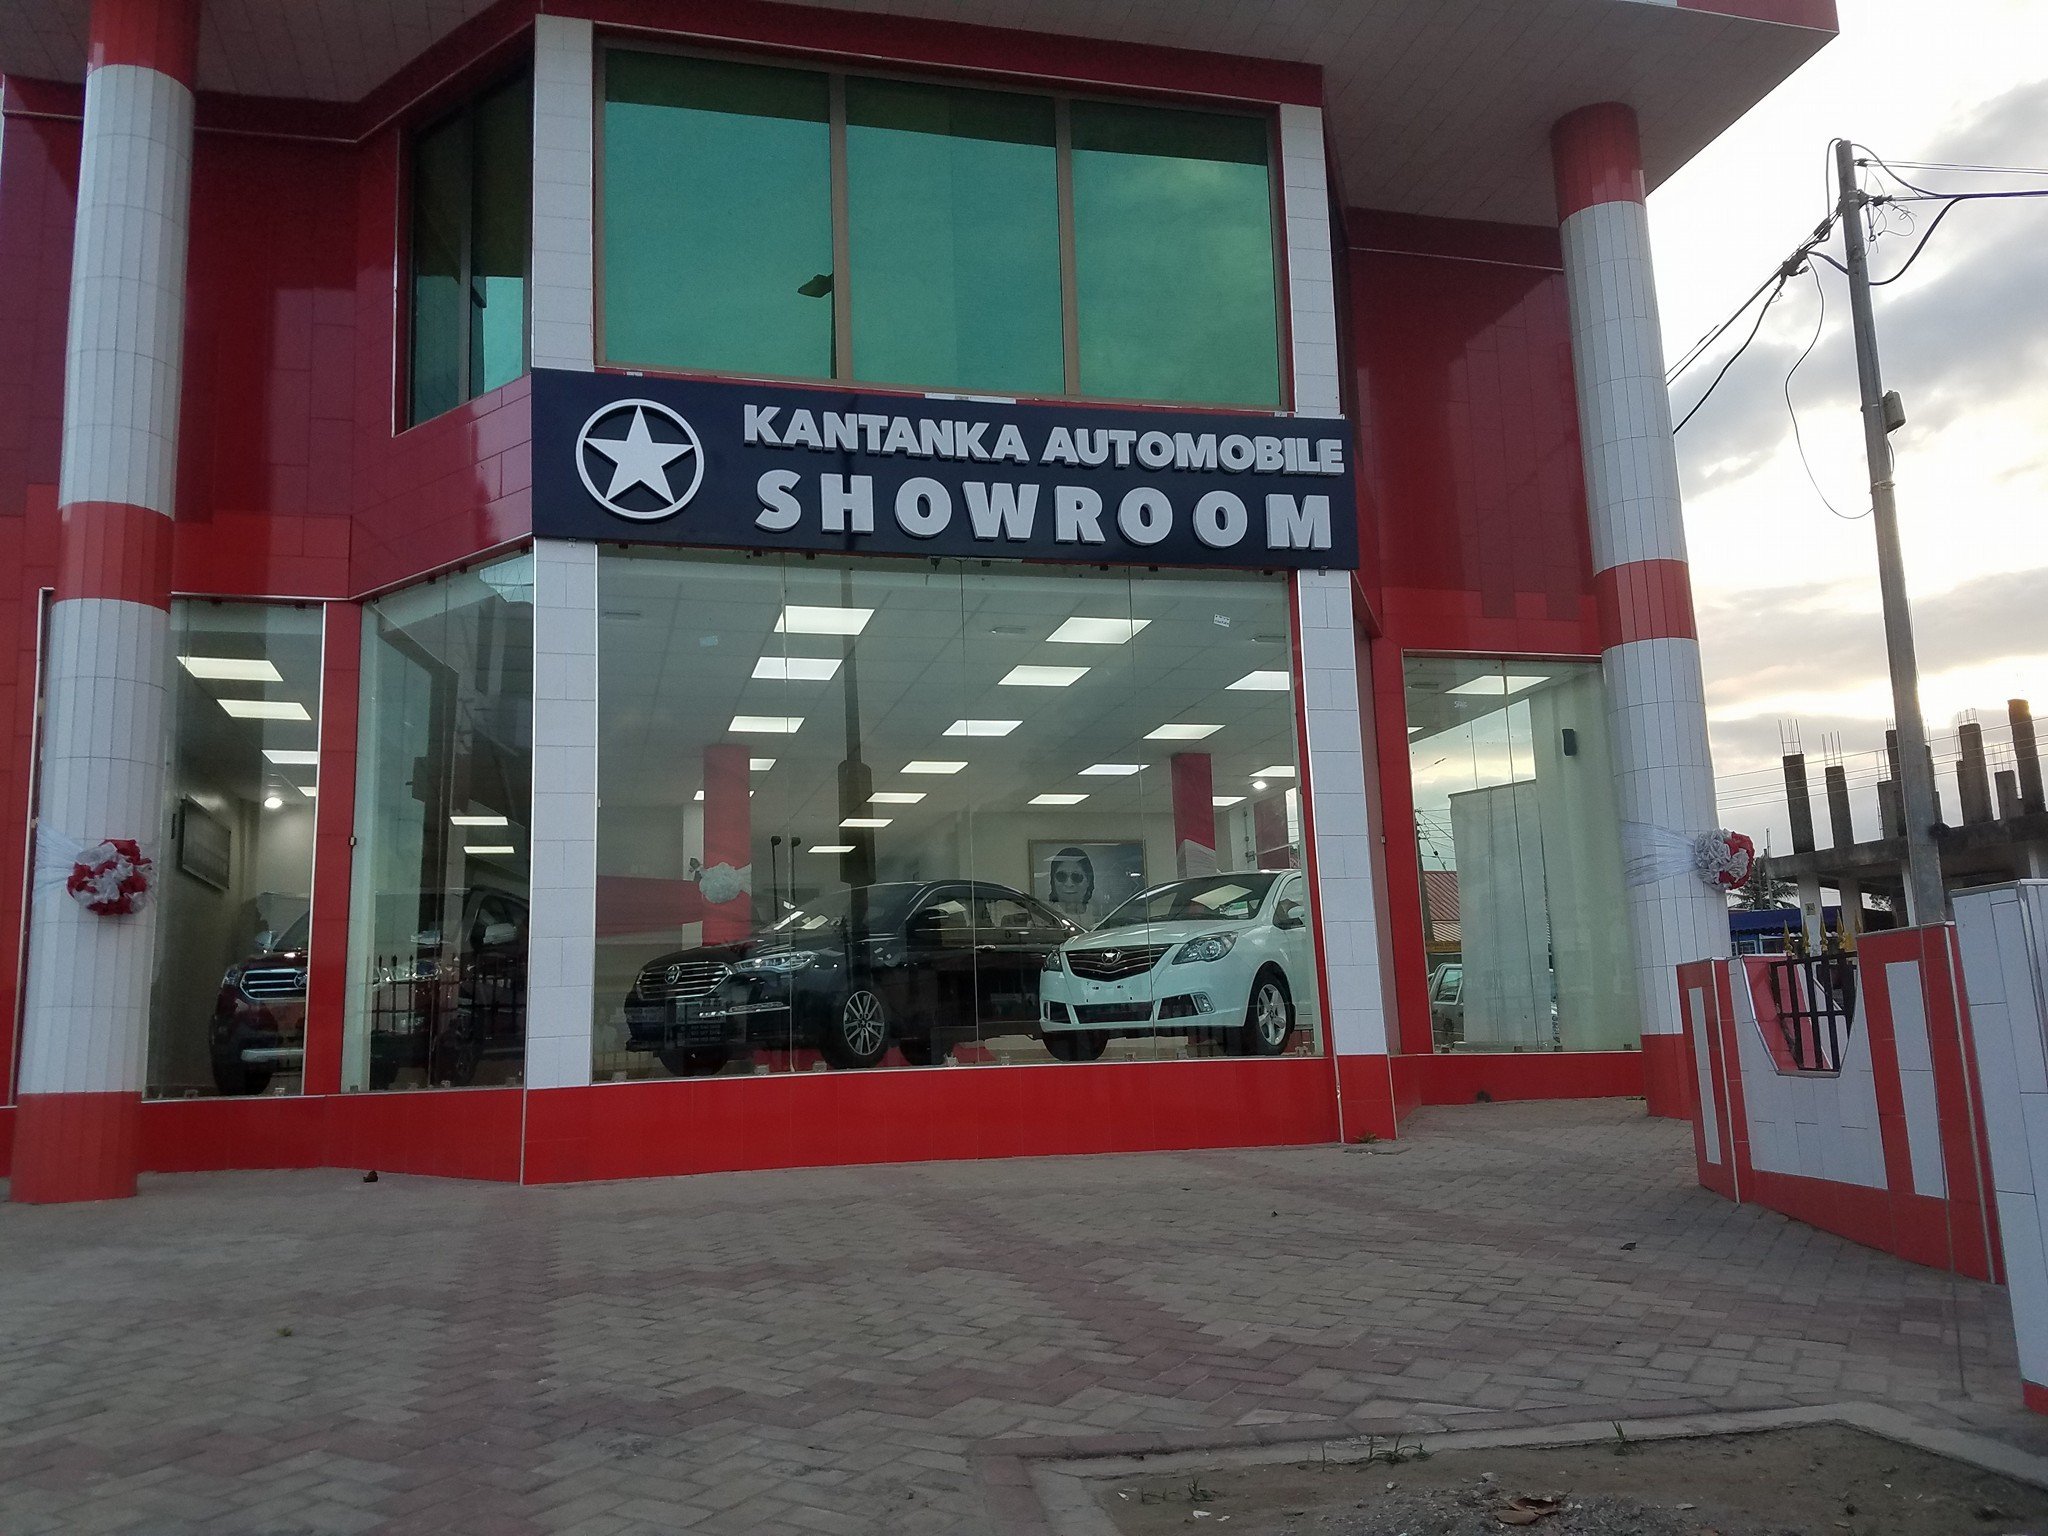 Kantanka showroom